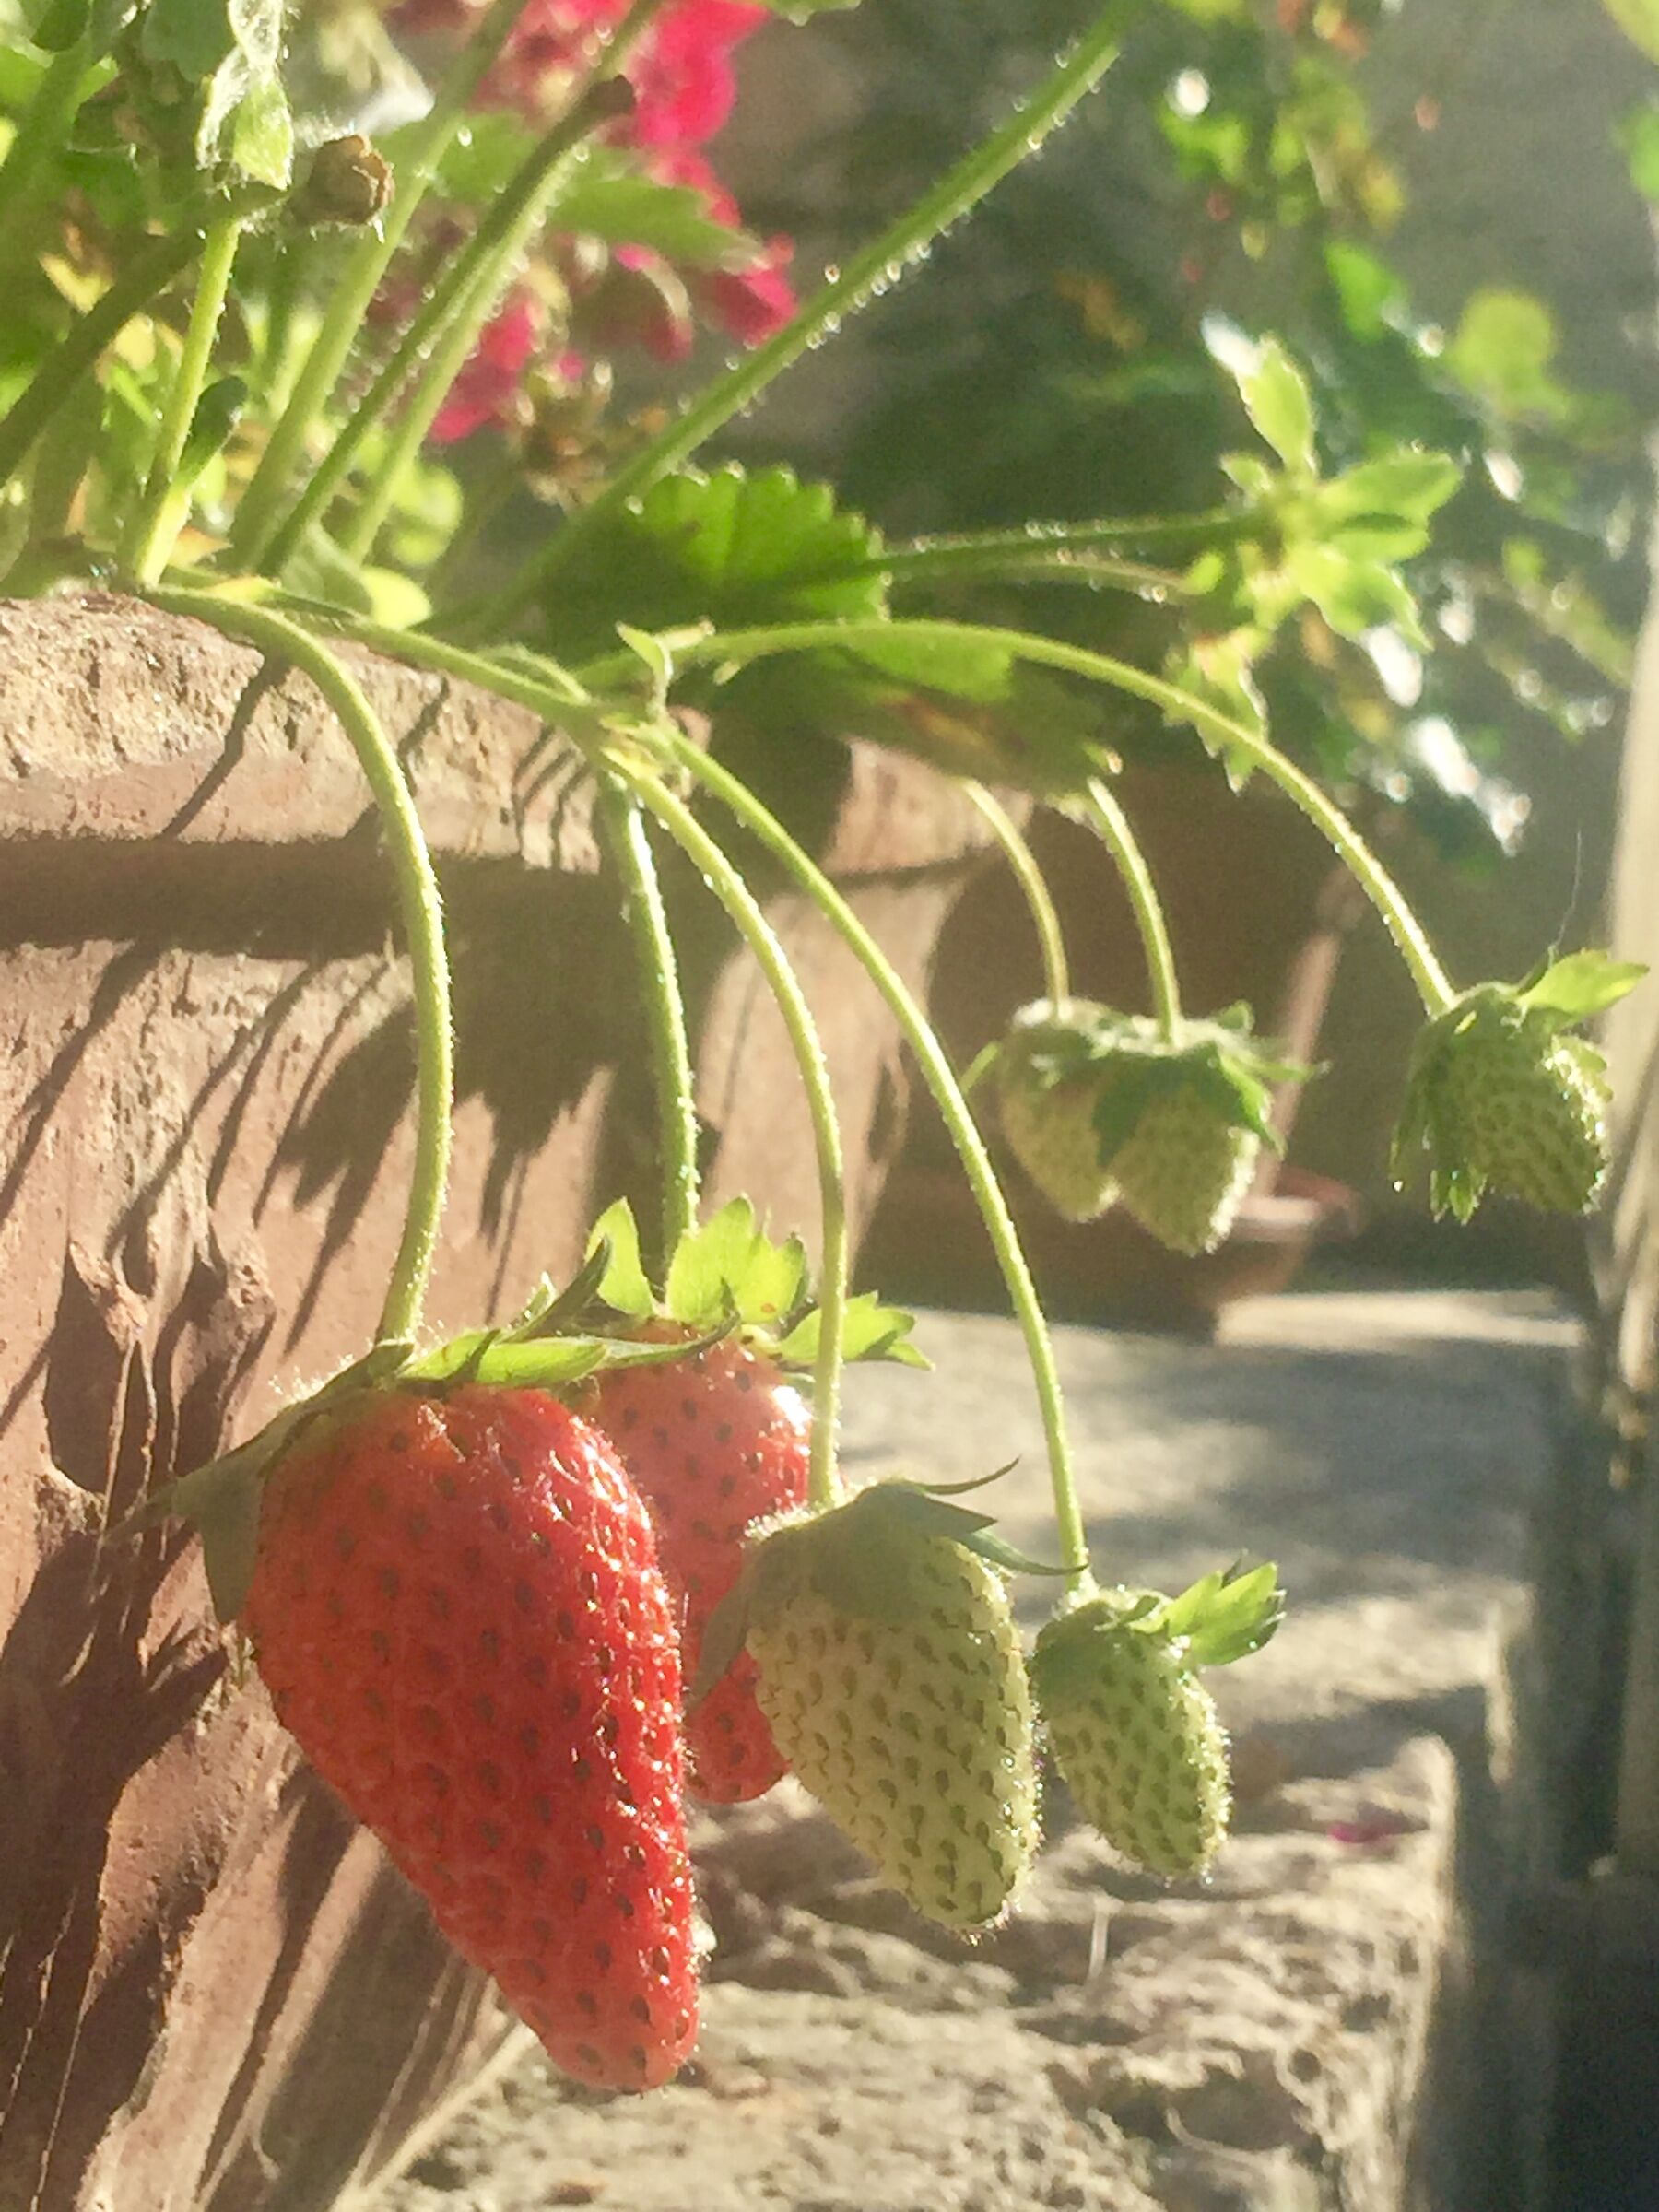 Strawberries ...